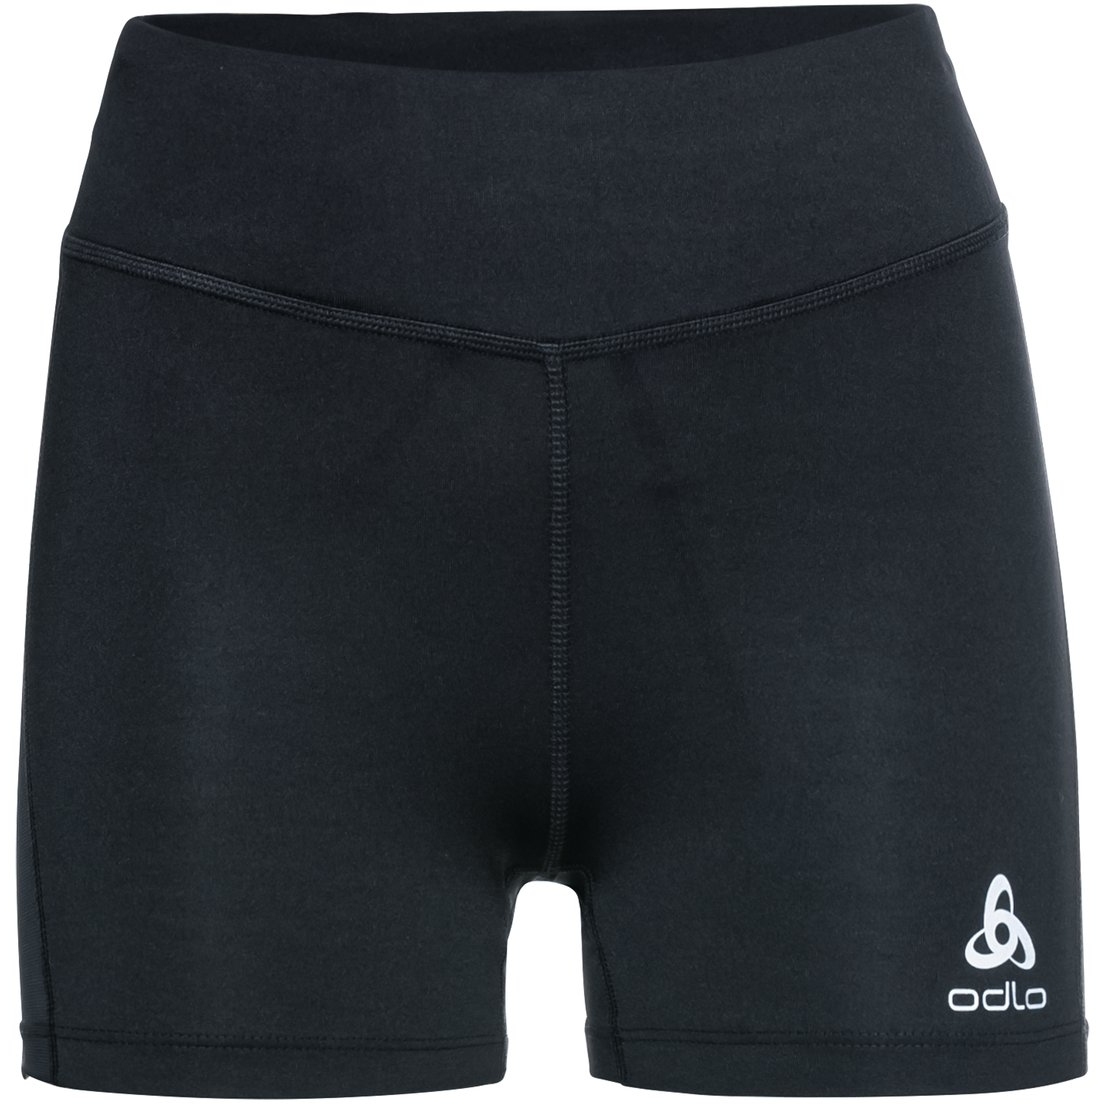 Bild von Odlo Essentials Sprinter-Shorts mit Mesh-Einsätzen Damen - schwarz